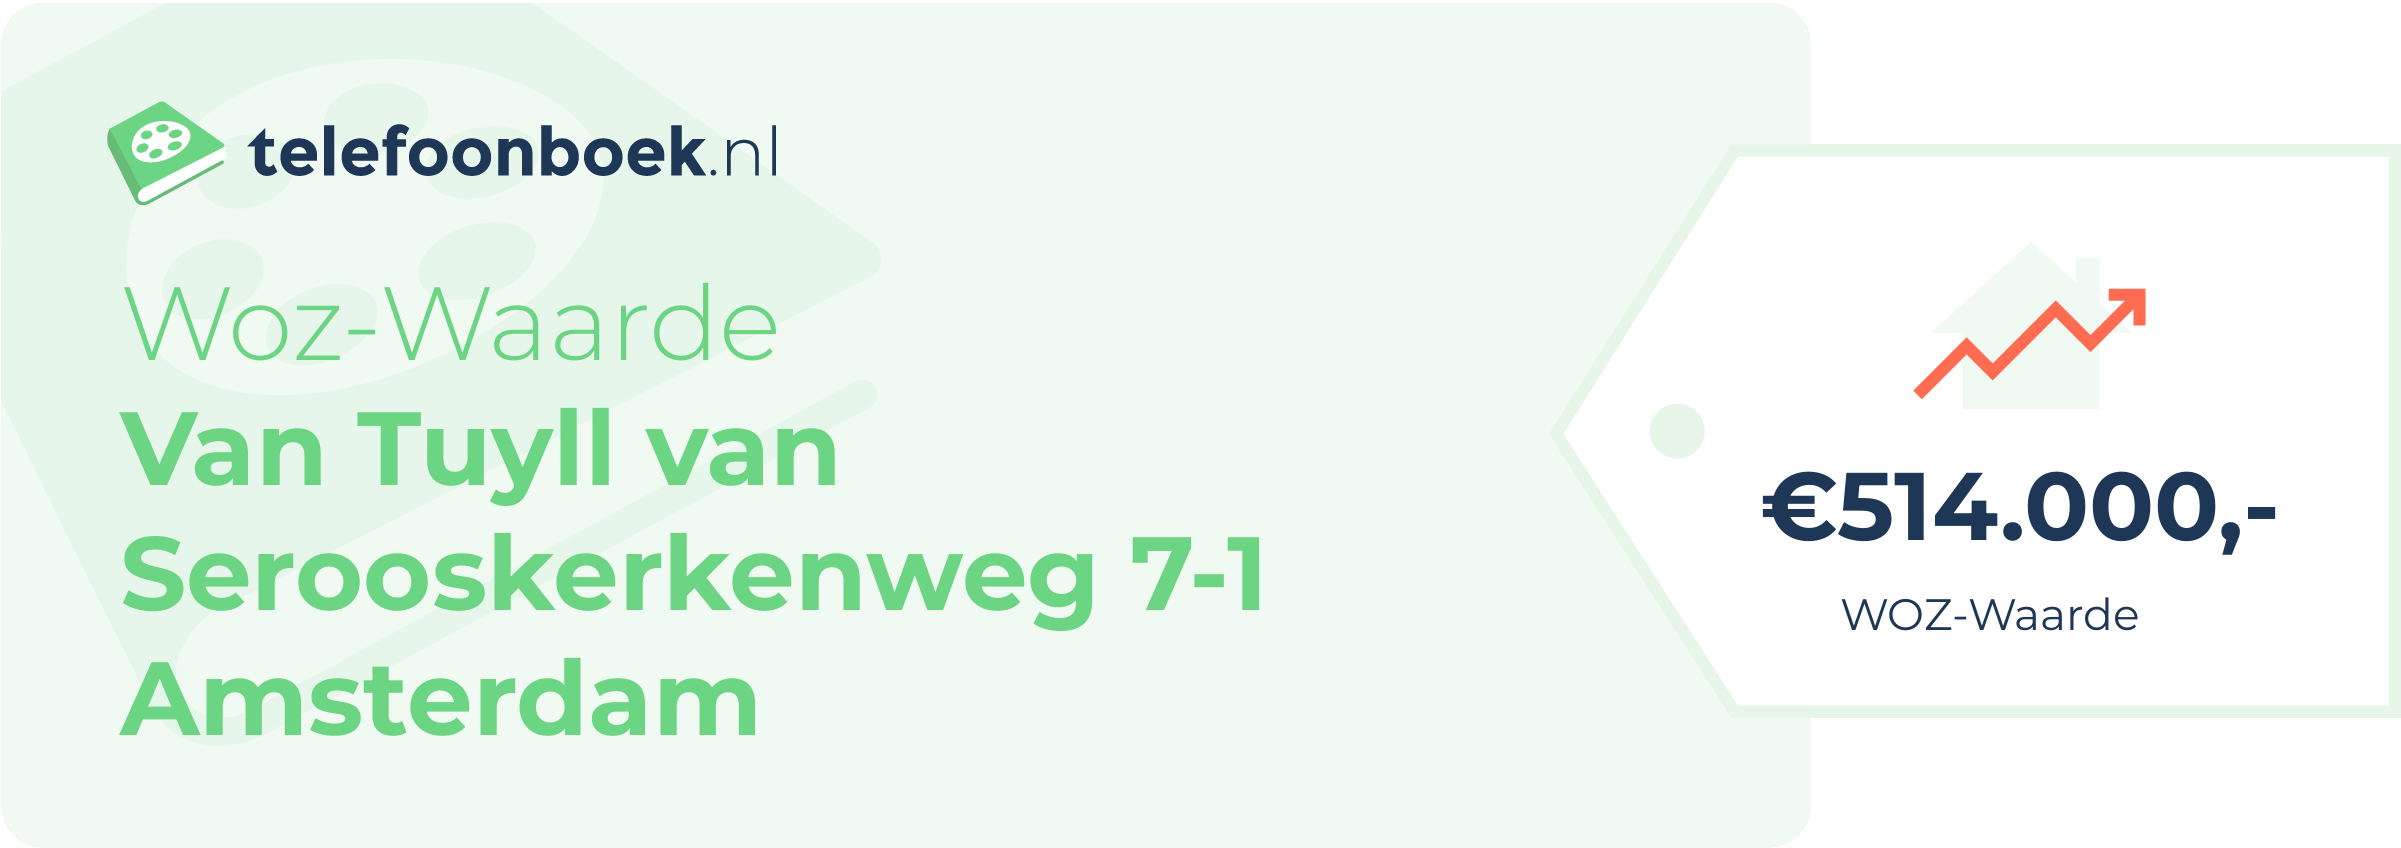 WOZ-waarde Van Tuyll Van Serooskerkenweg 7-1 Amsterdam